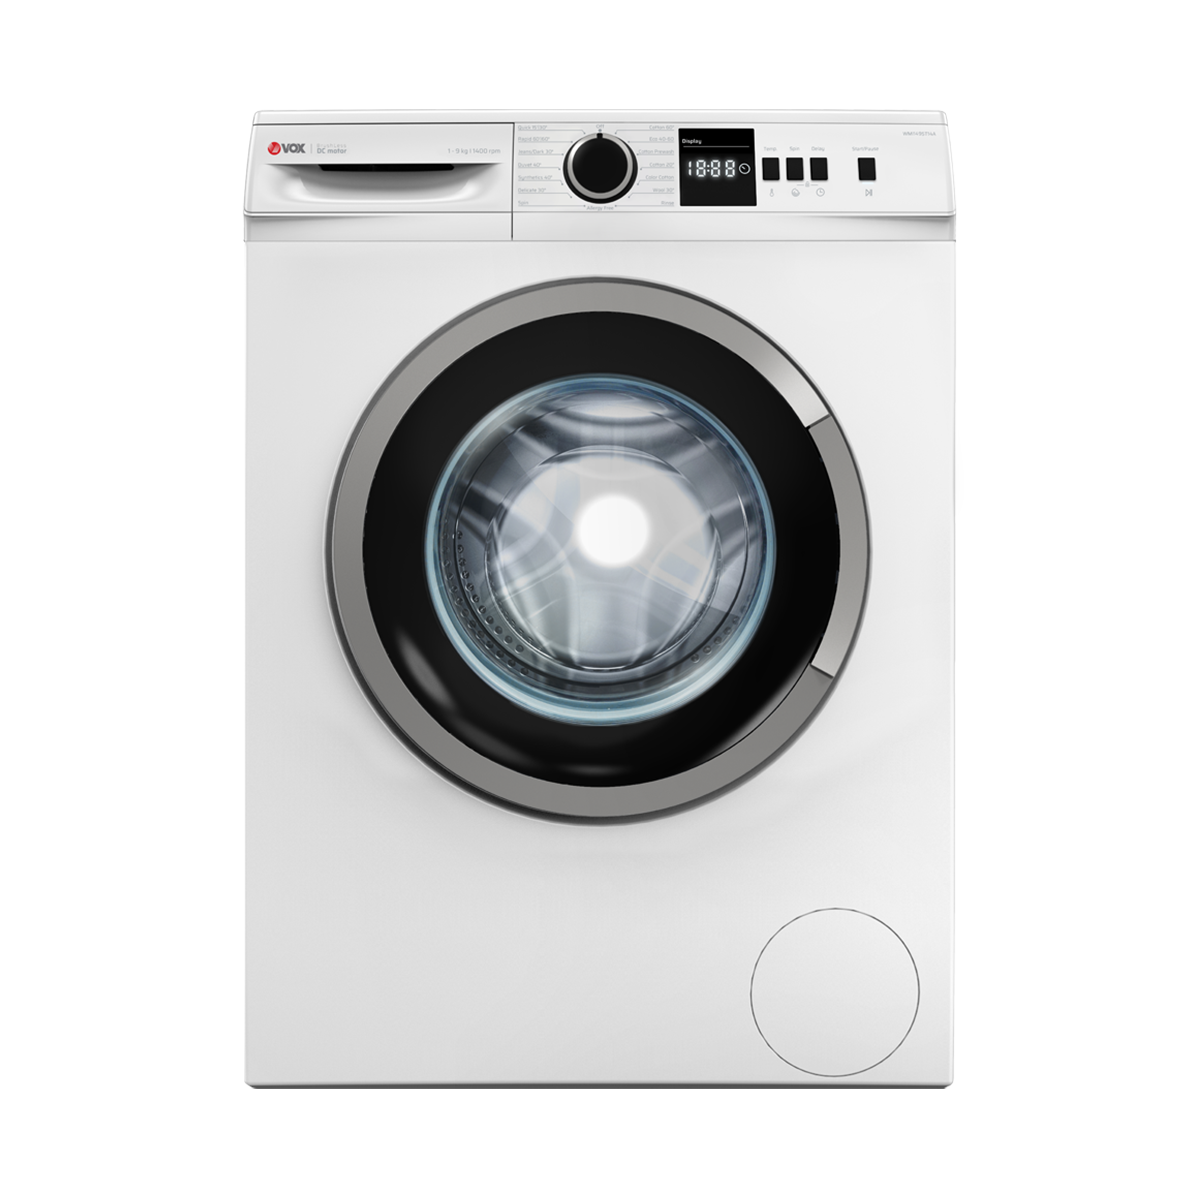 Washing machine WMI1495-T14A 